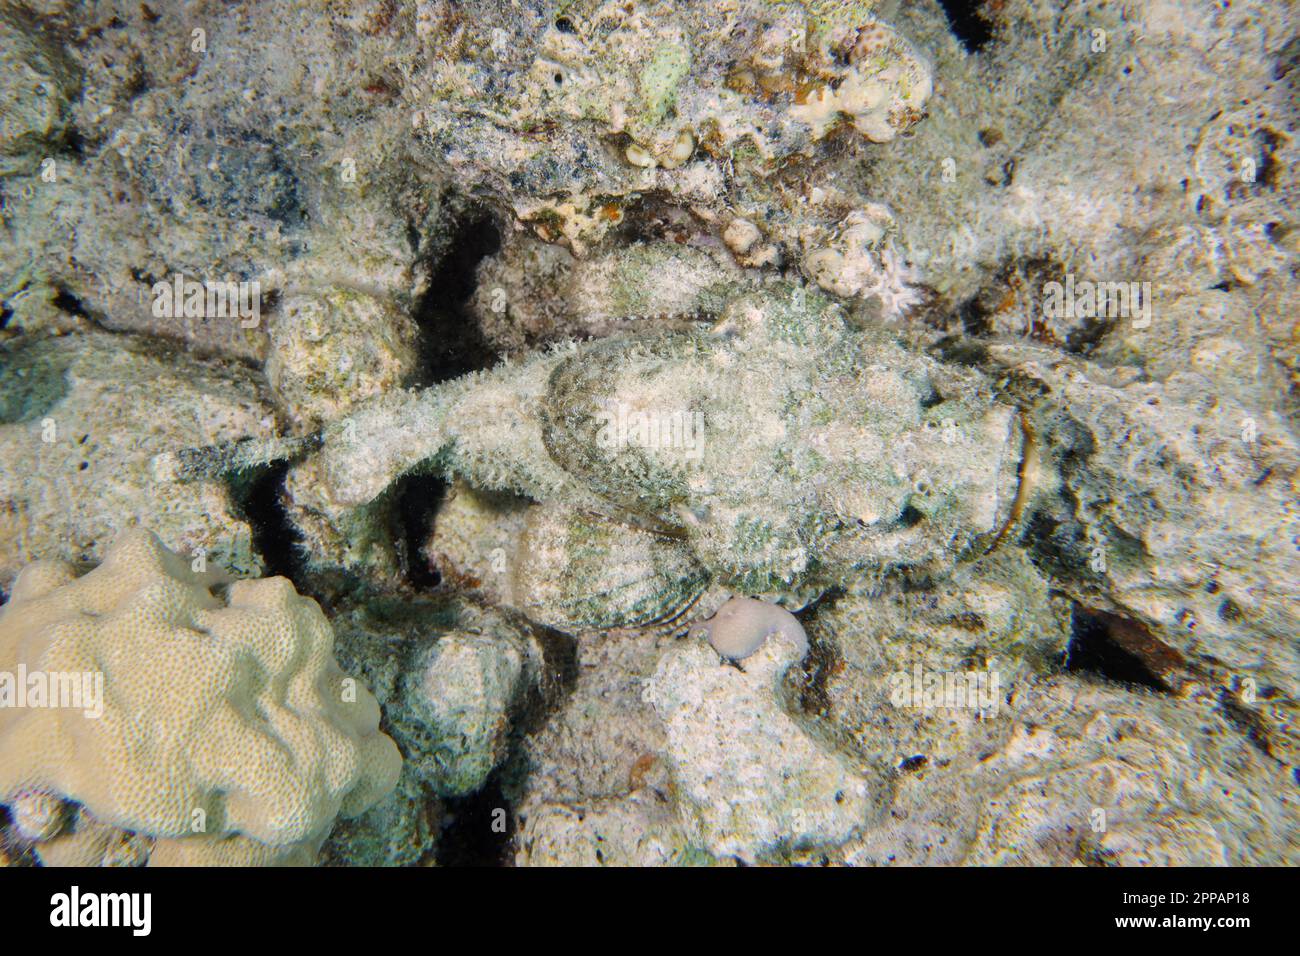 Bien camouflé à tête plate (Scorpaenopsis diablus), épave du site de plongée du Giannis D, Hurghada, Egypte, Mer Rouge Banque D'Images